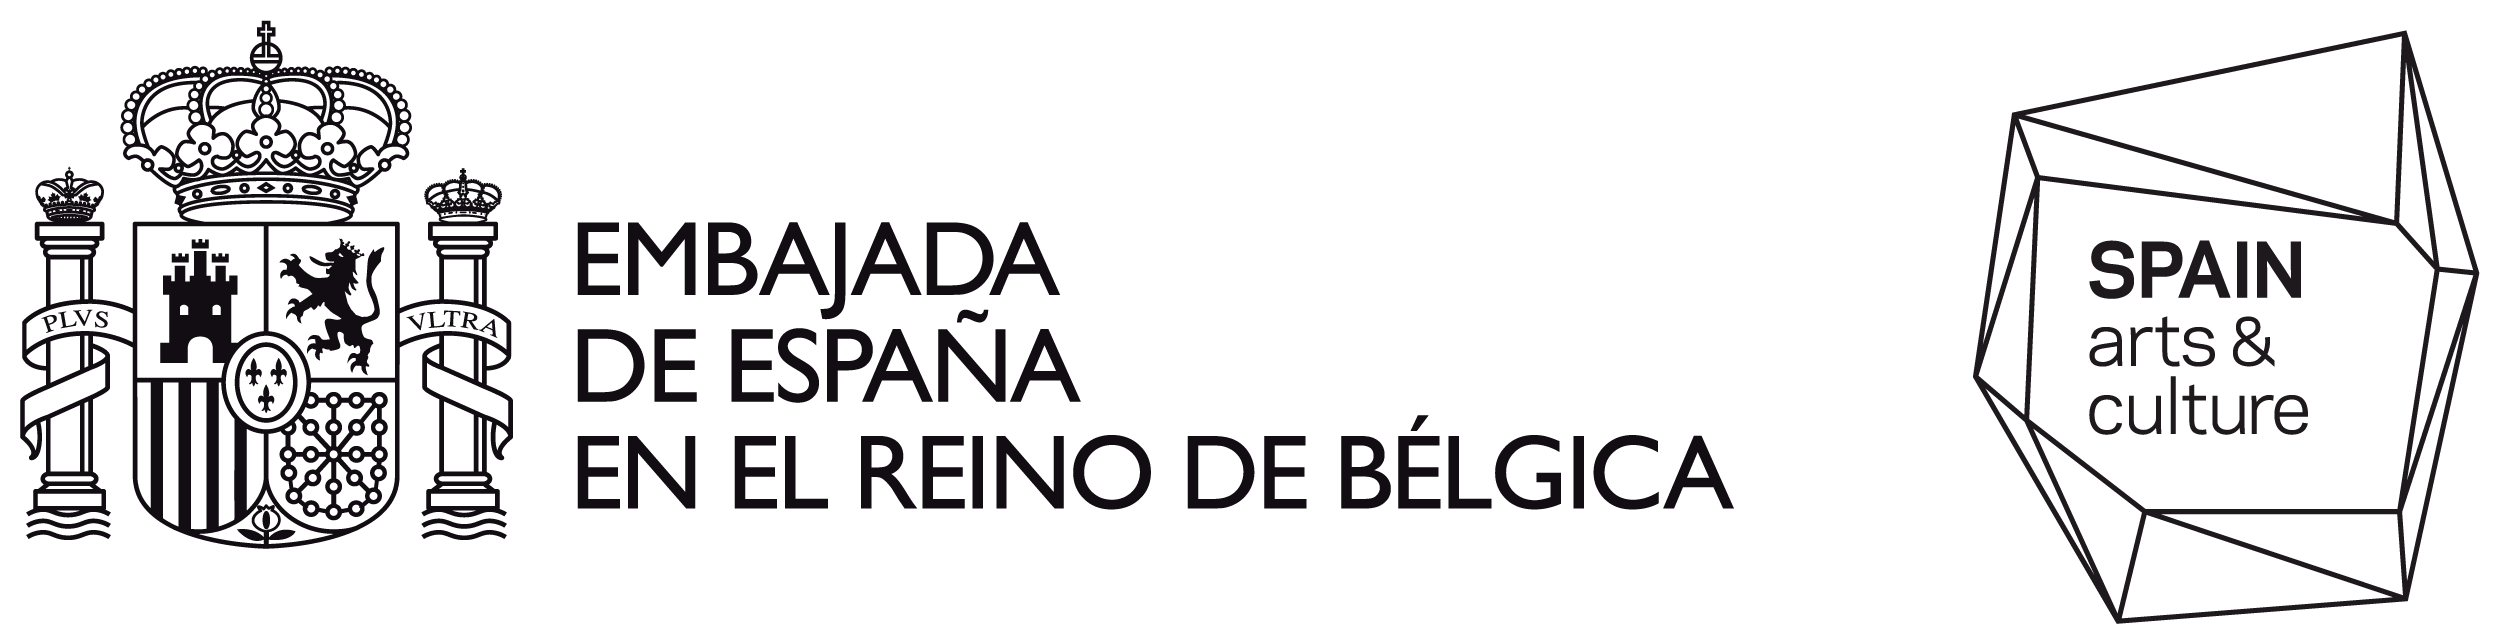 embajada-espana-belgica-bn-2.png